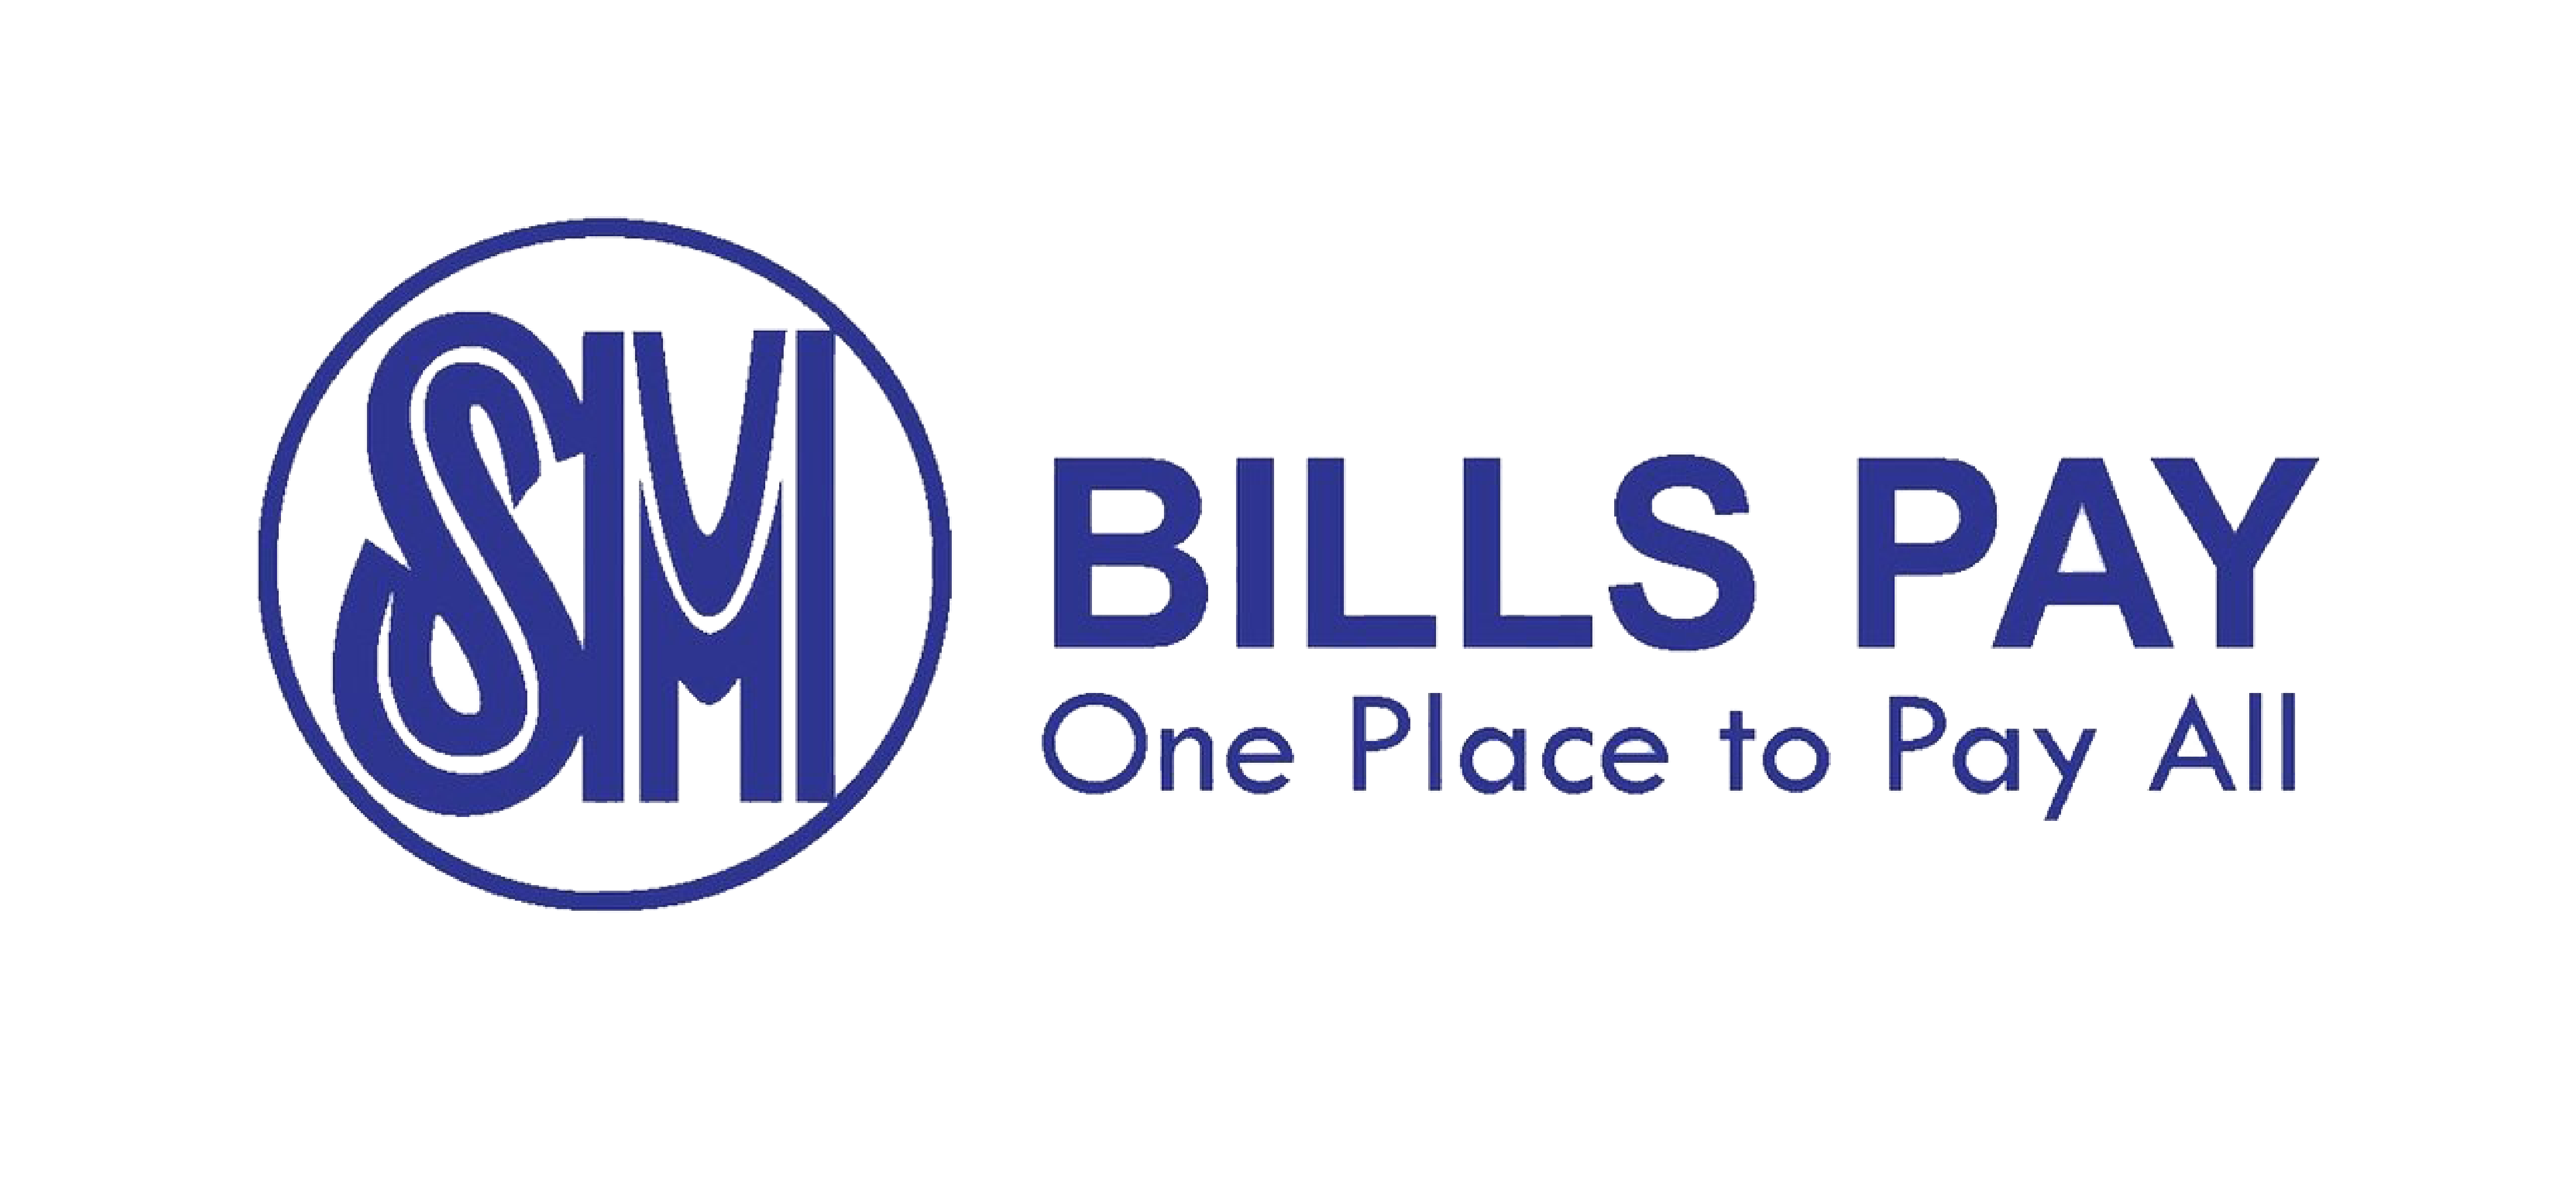 SM Bills Payment Network